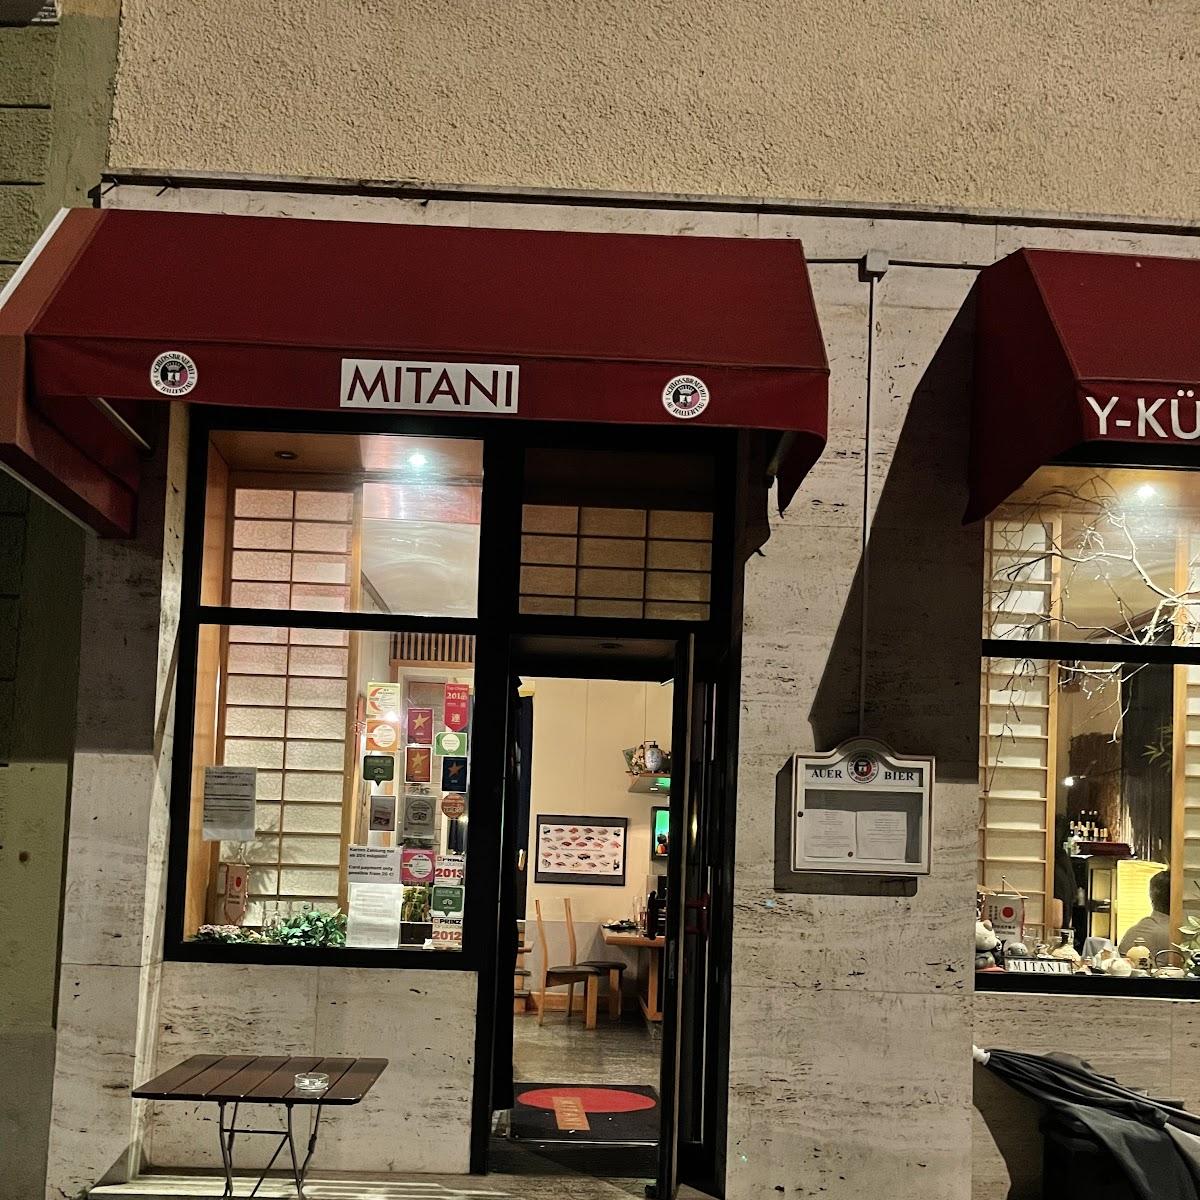 Restaurant "Mitani Restaurant" in München